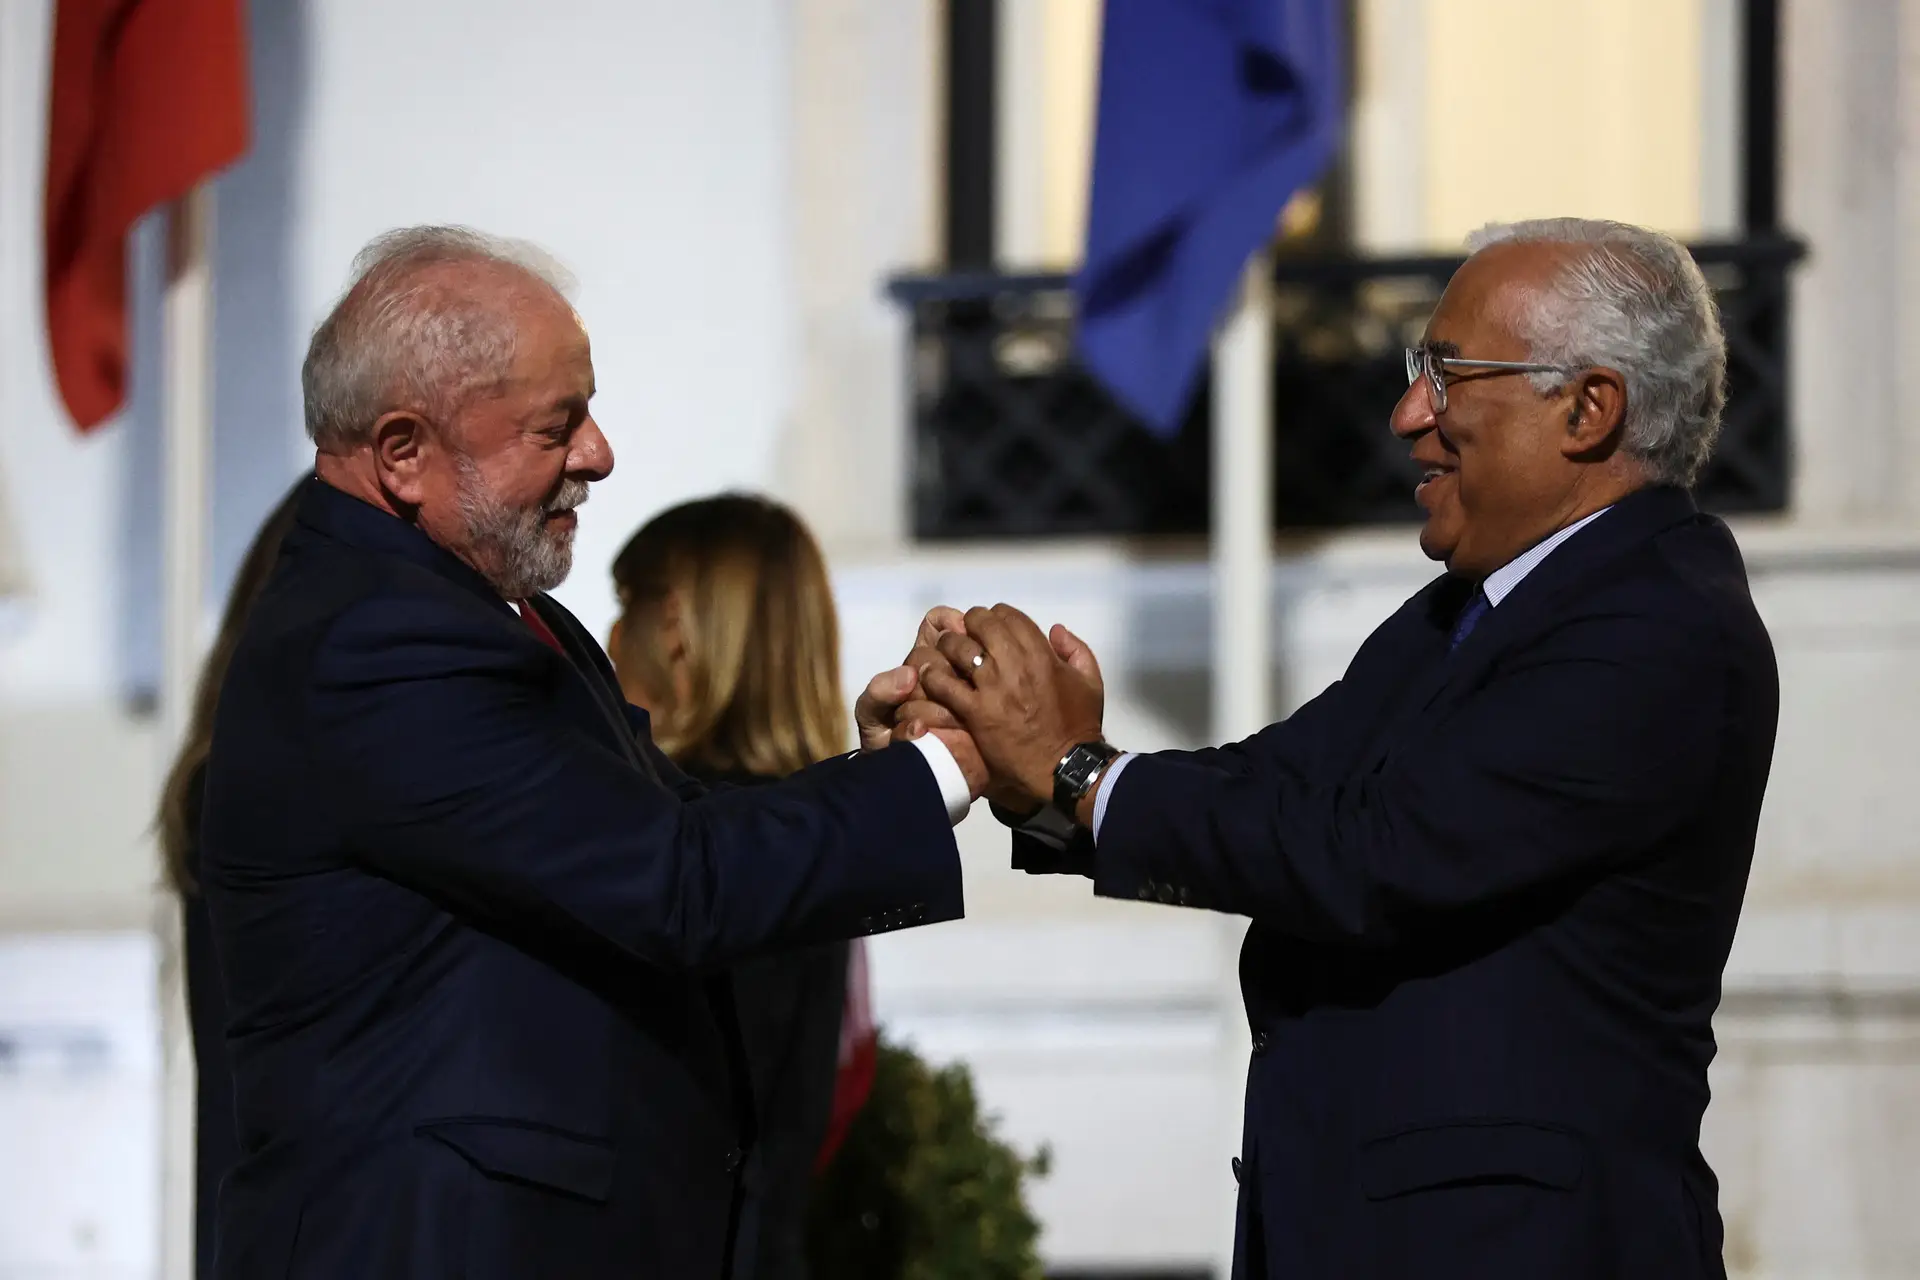 O poder político e empresarial brasileiro vem a Lisboa, mas o Estado português declinou o convite